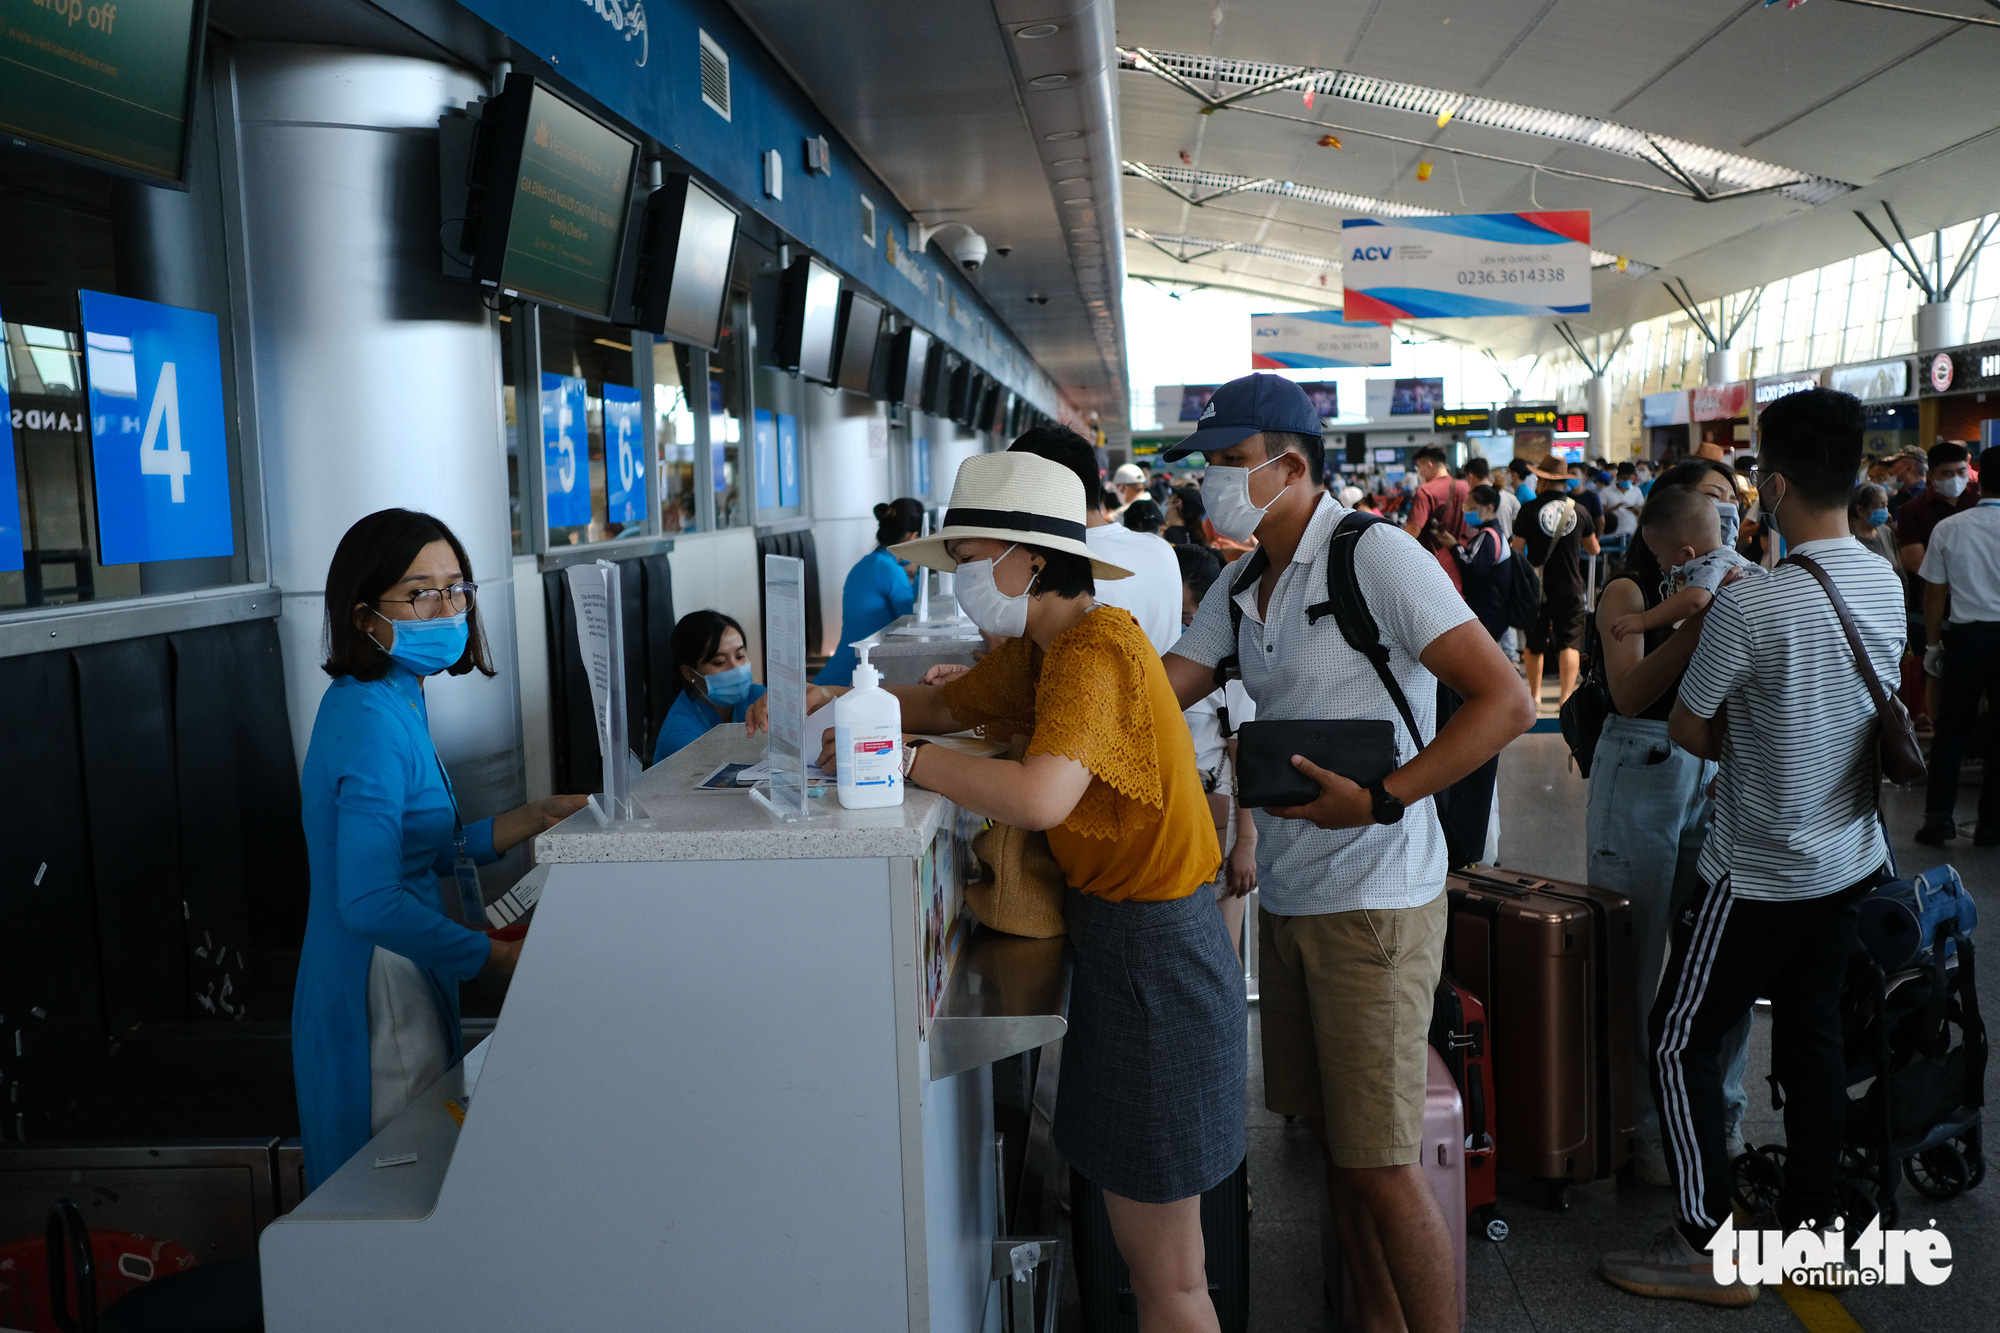 Over 310 visitors still stranded in Da Nang